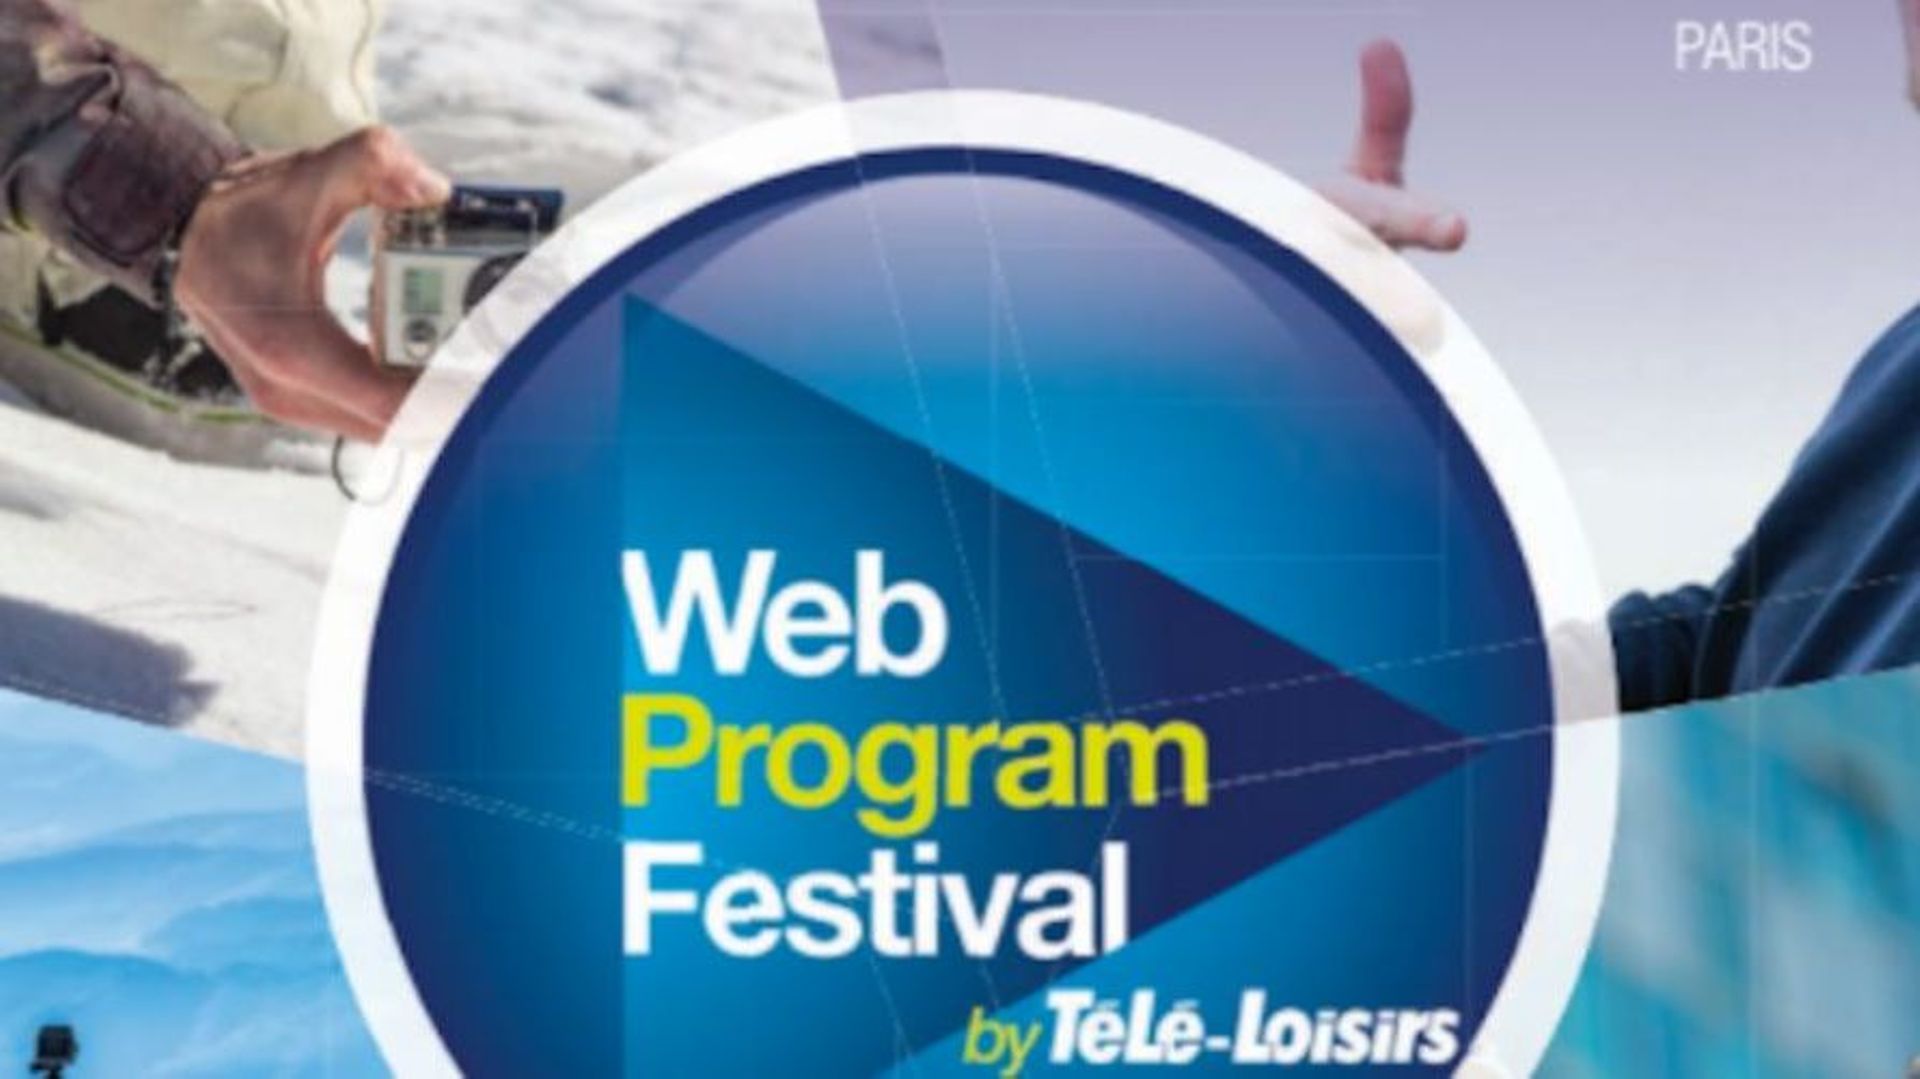 Votez pour la webcréation belge au Web Program Festival de Paris !